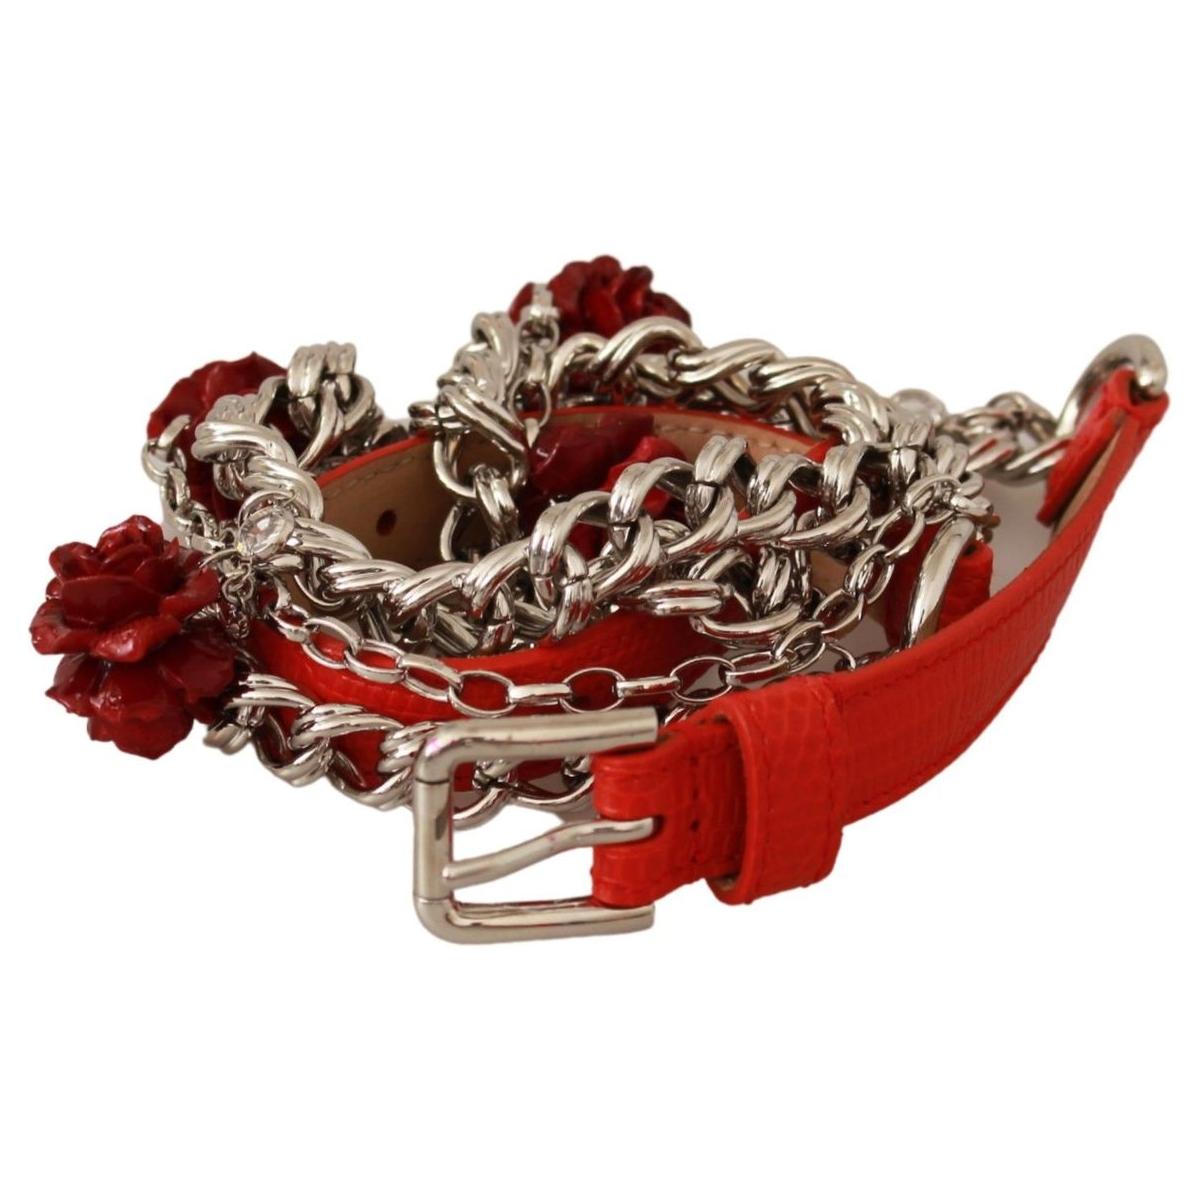 Dolce & Gabbana Elegant Floral Rose Waist Belt in Vibrant Red Belt red-leather-roses-floral-silver-waist-belt IMG_1565-b2adb2b1-e4b_eec8dc9d-8b0f-4318-91f1-6493f3806c3b.jpg